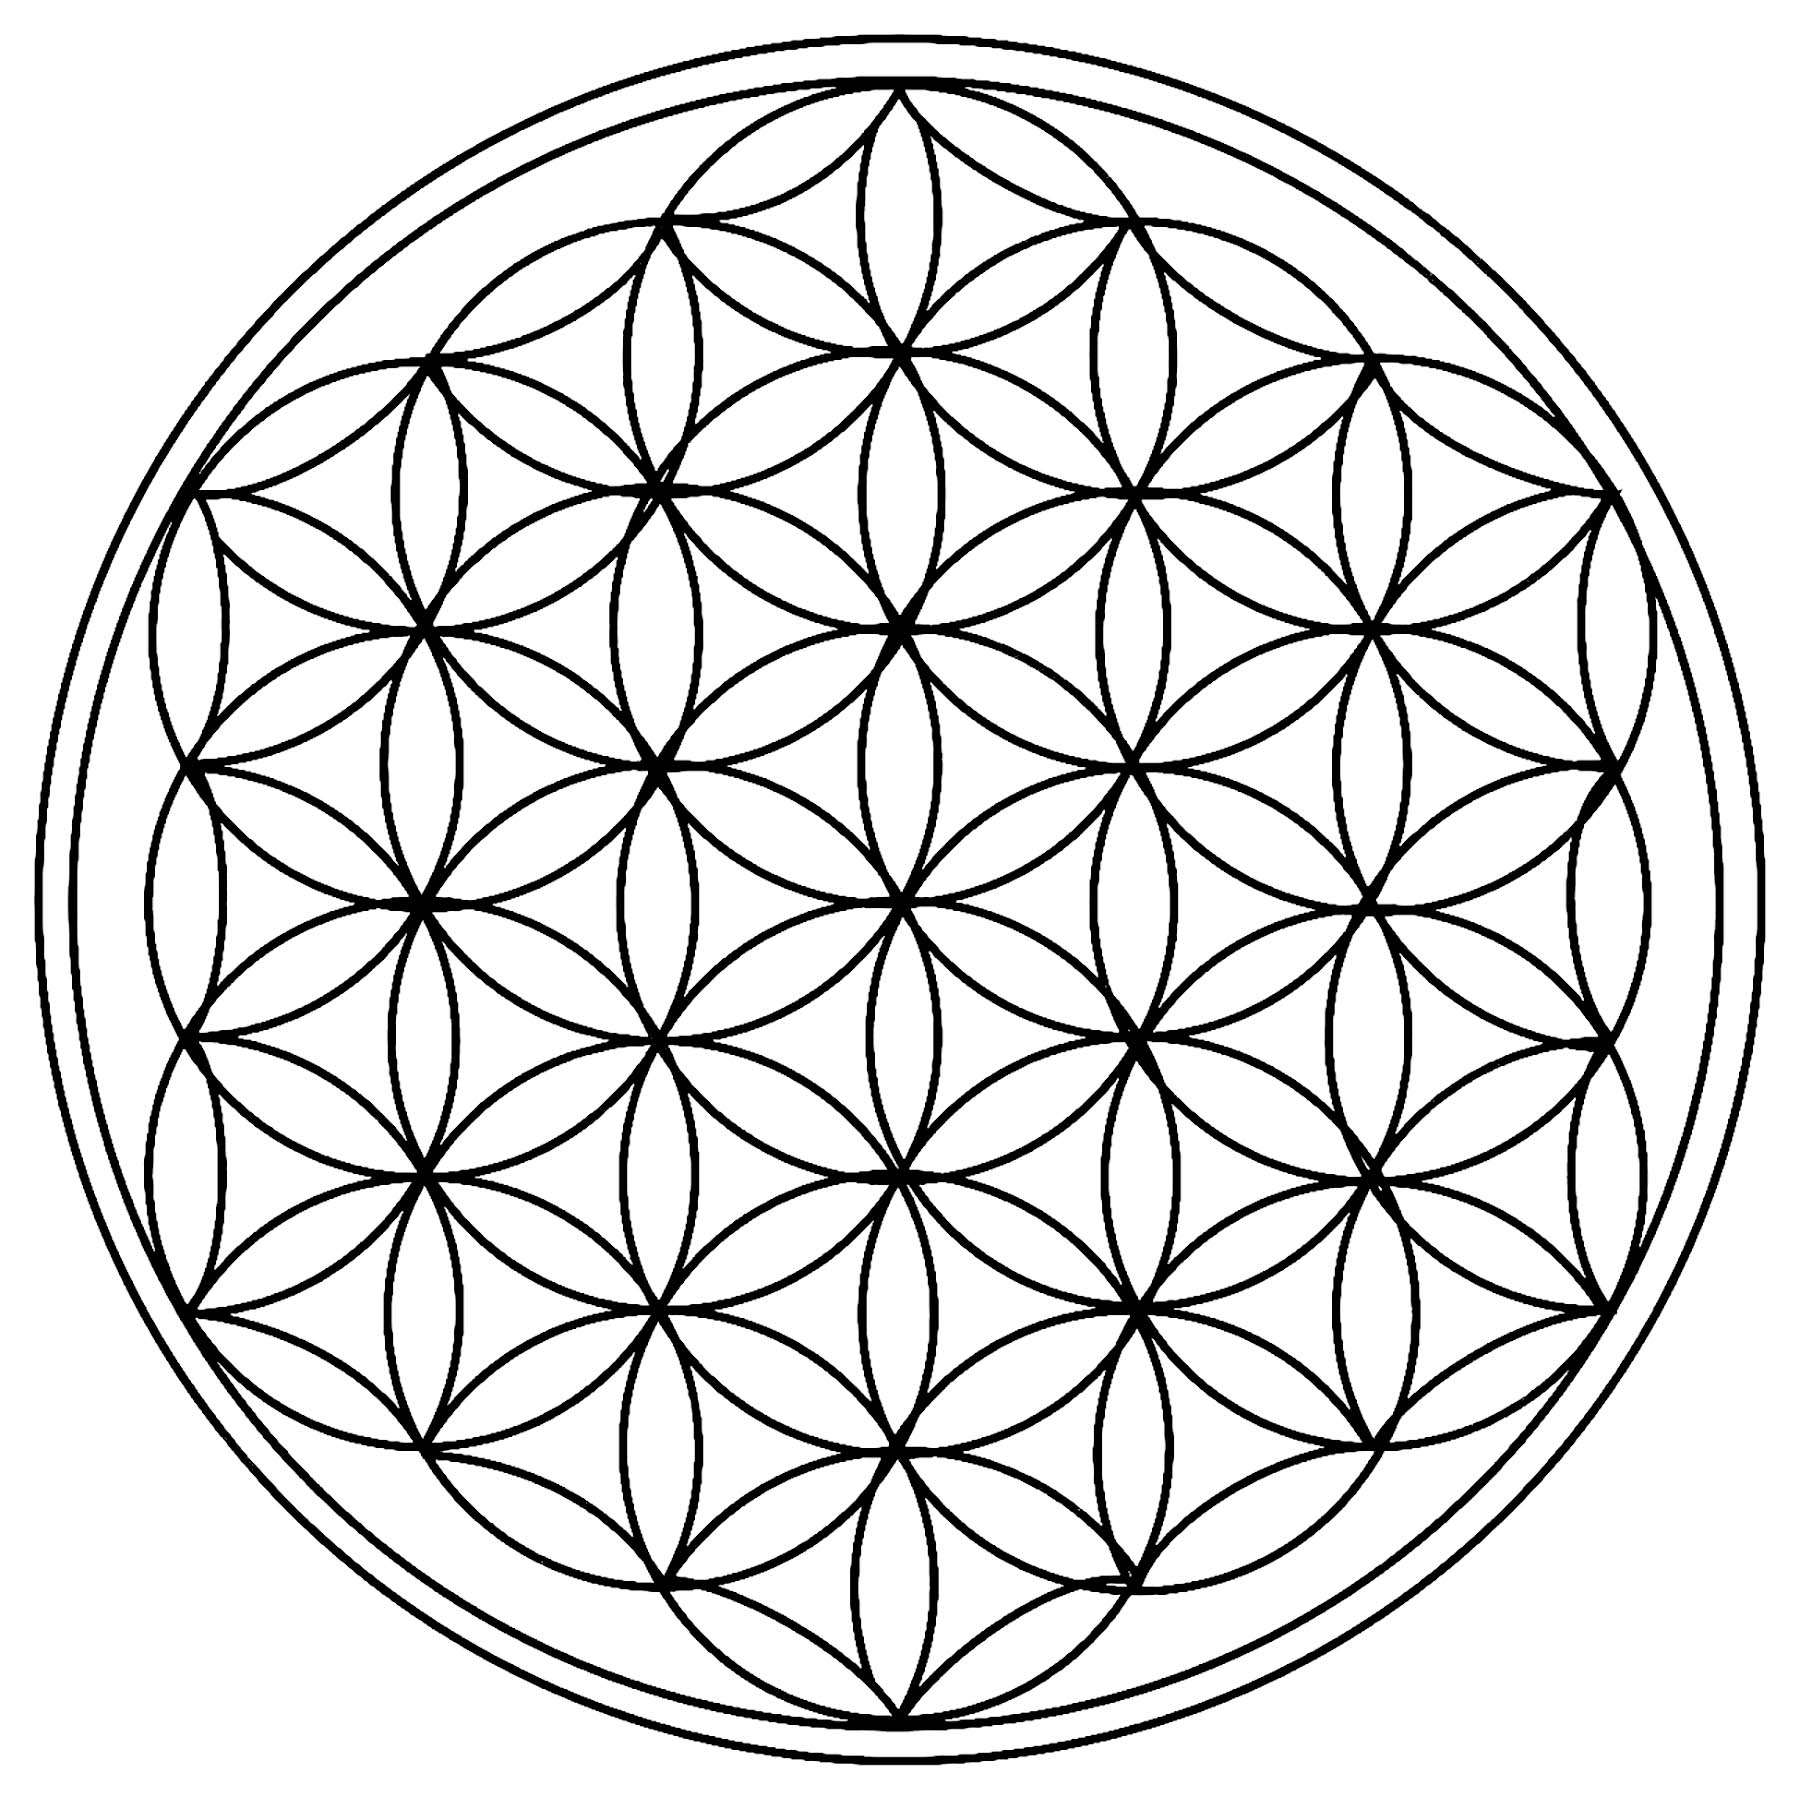 Only circles, forming a beautiful Mandala